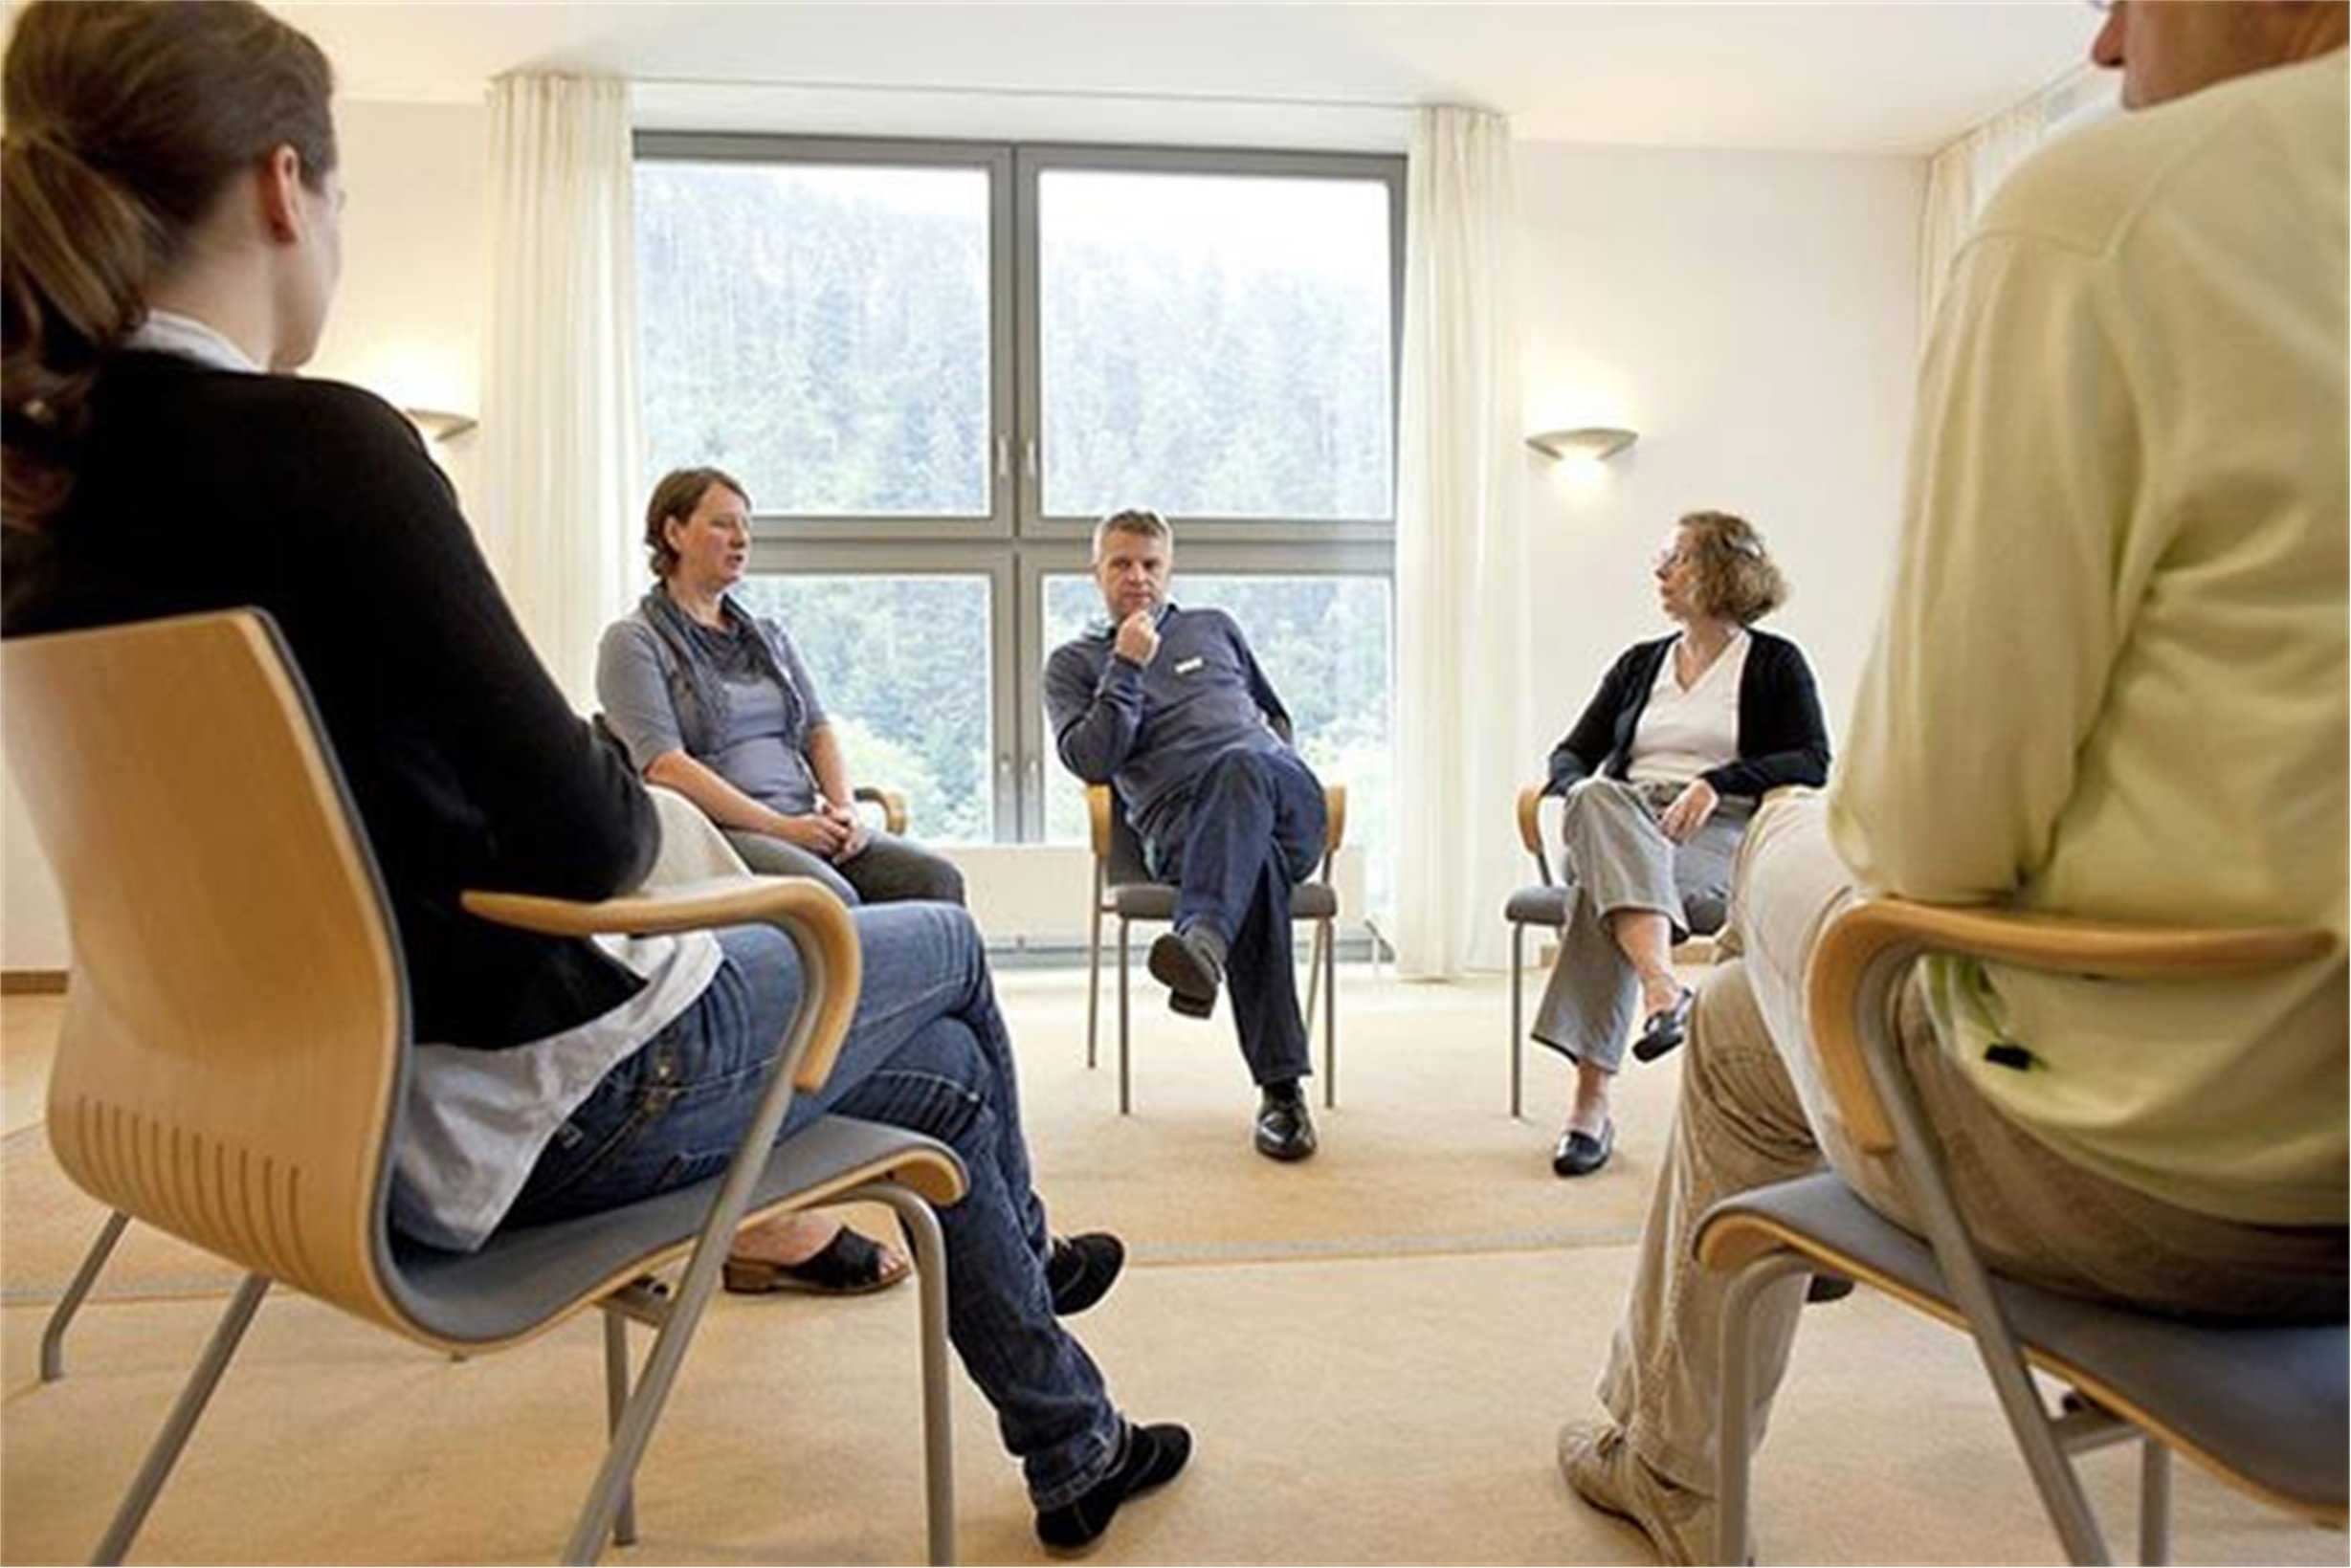 Консультации 5 семейных психологов с опытом от 3 до 24 лет практики — психологический центр доктора голубева